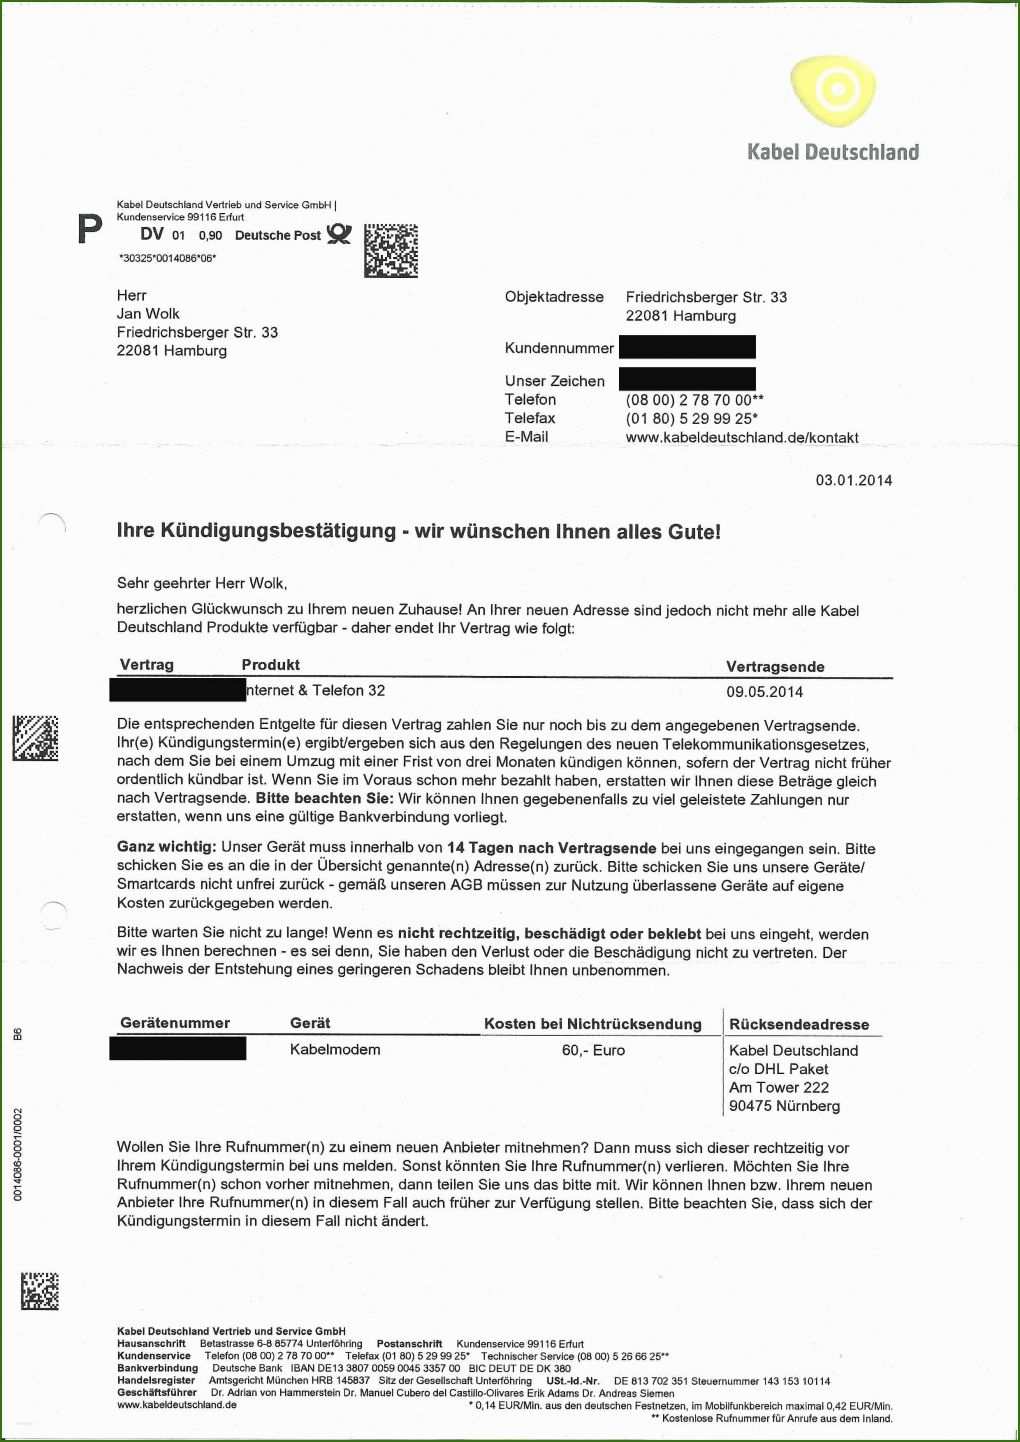 007 Kabel Deutschland Kündigung Umzug Vorlage Kabel Deutschland Kündigung Vorlage Umzug Quirky Kabel